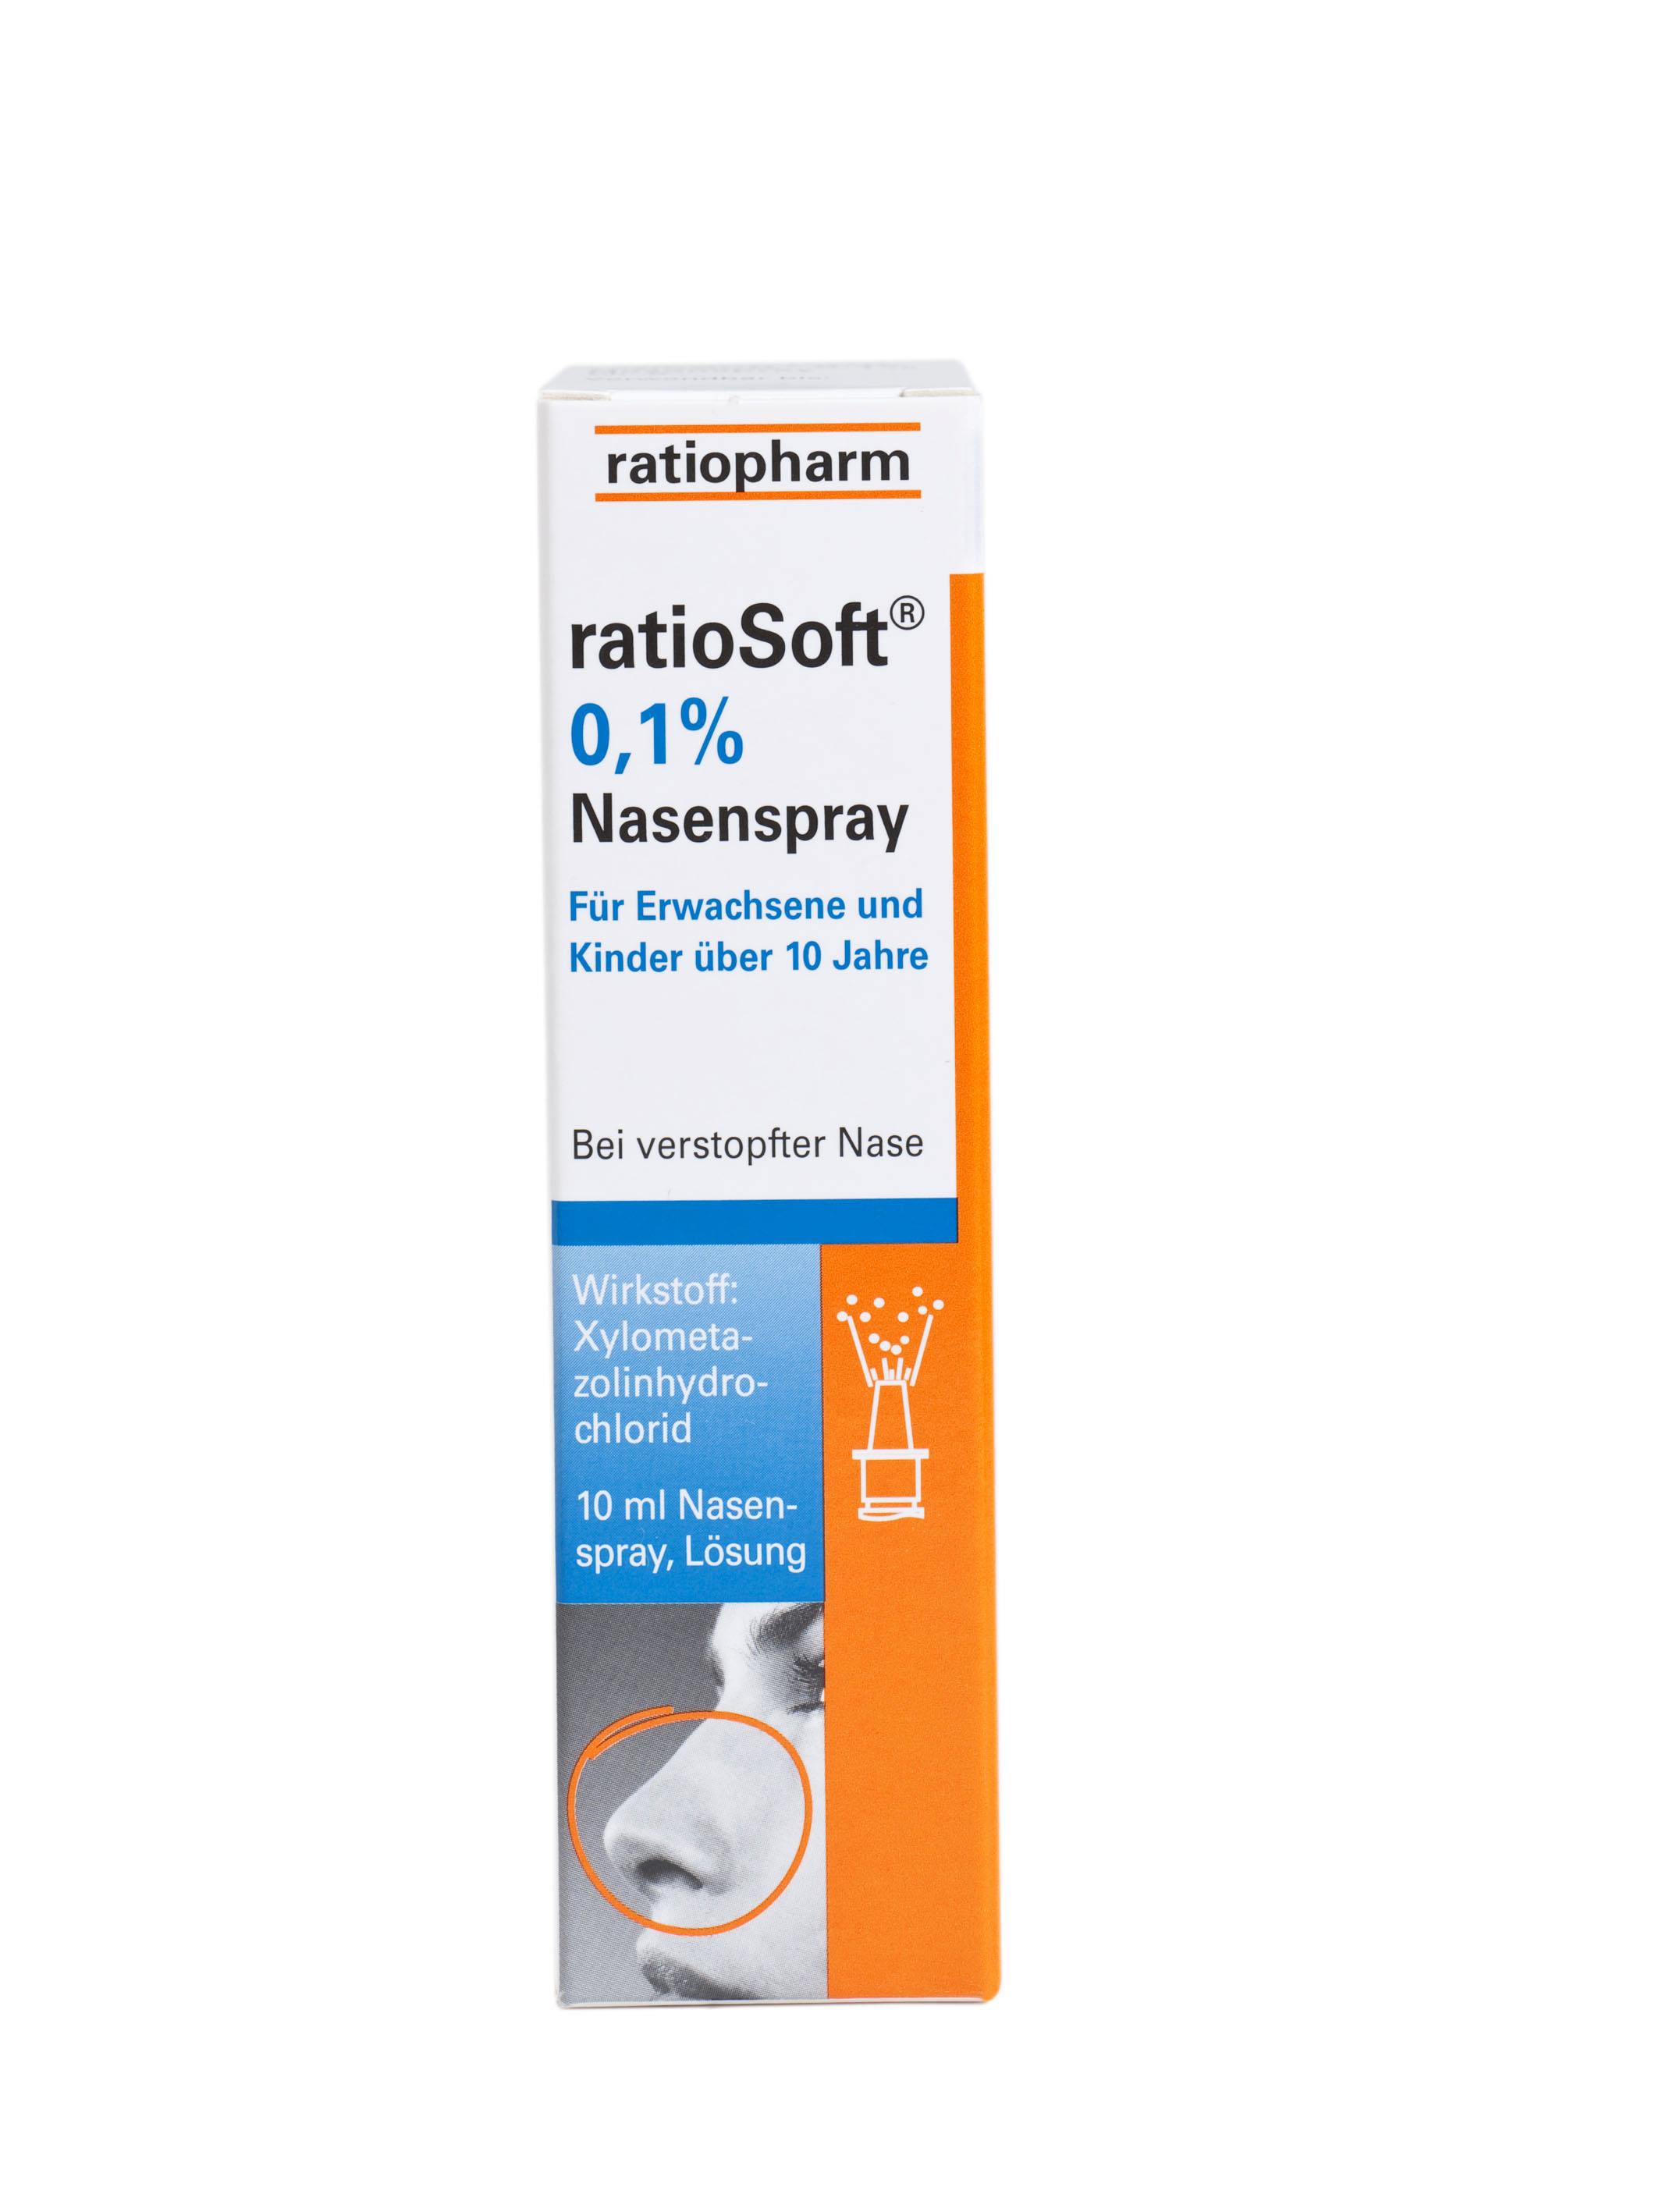 ratioSoft 0,1% - Nasenspray